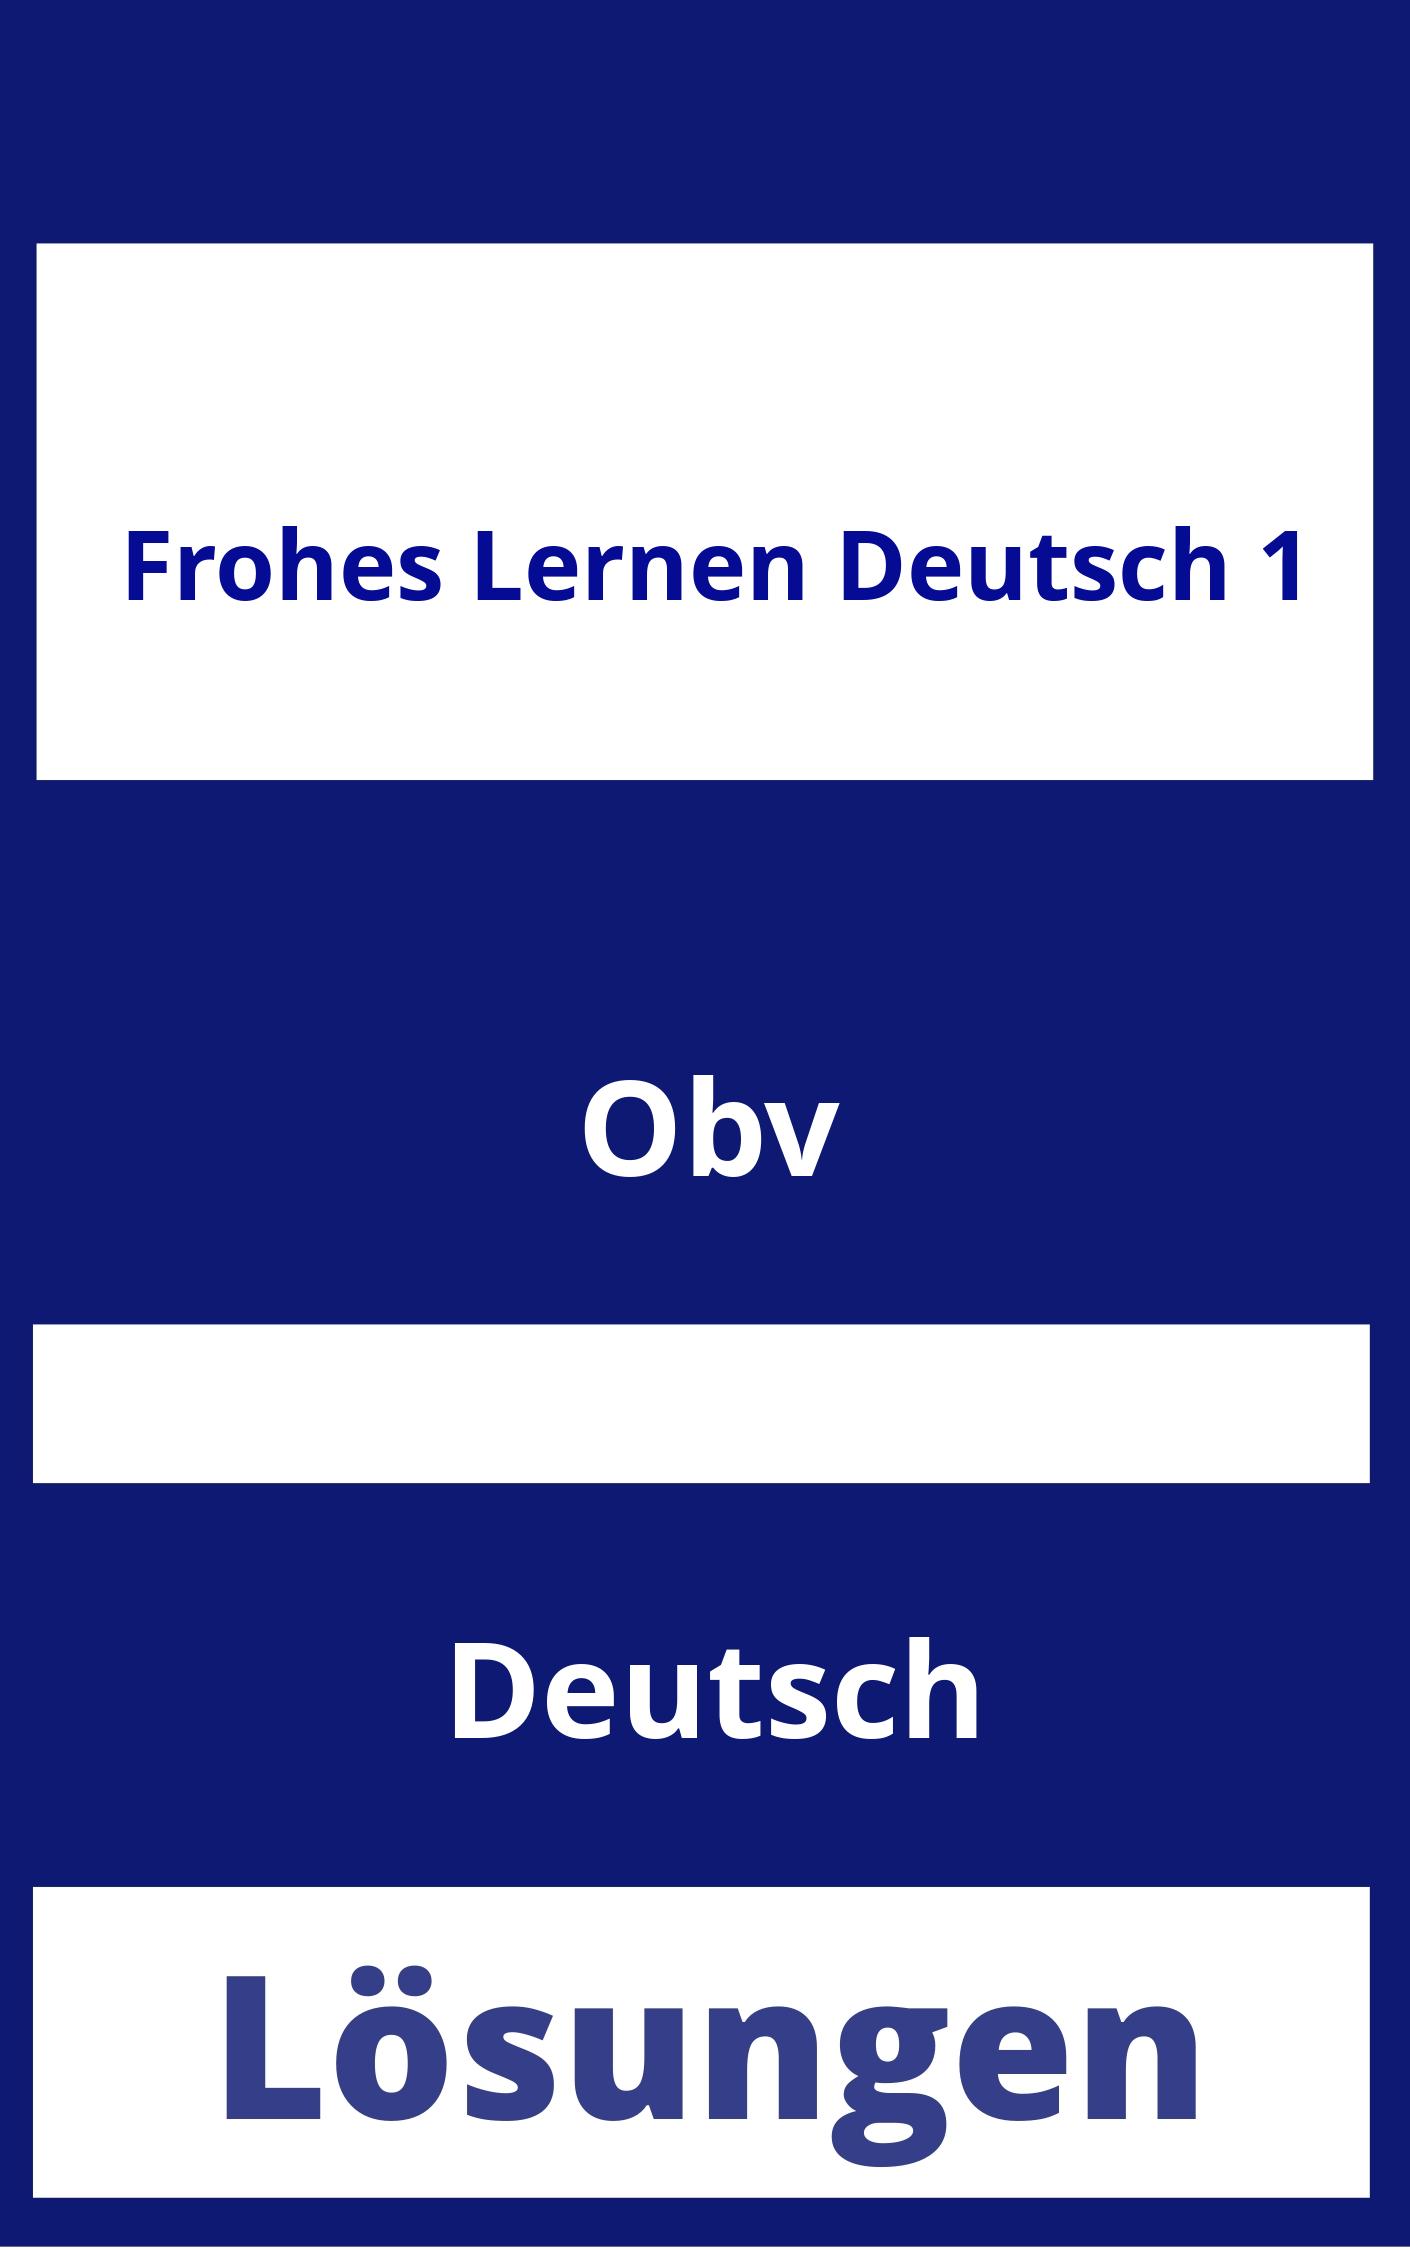 Frohes Lernen Deutsch 1 Lösungen PDF